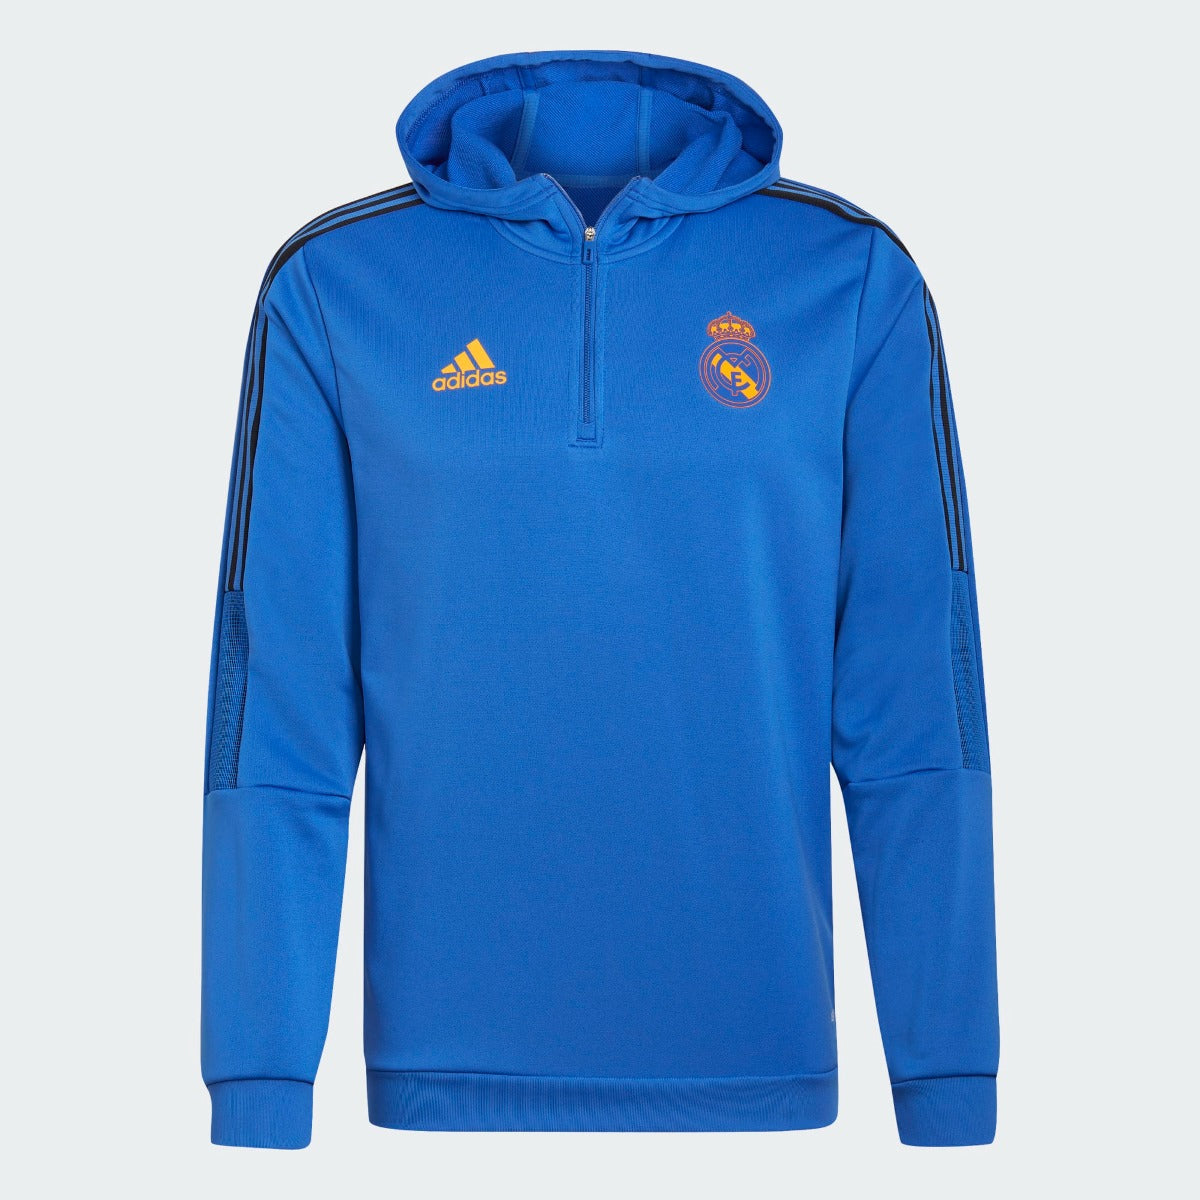 Adidas, Felpa adidas 21-22 Real Madrid con cappuccio - Hi Res Blue